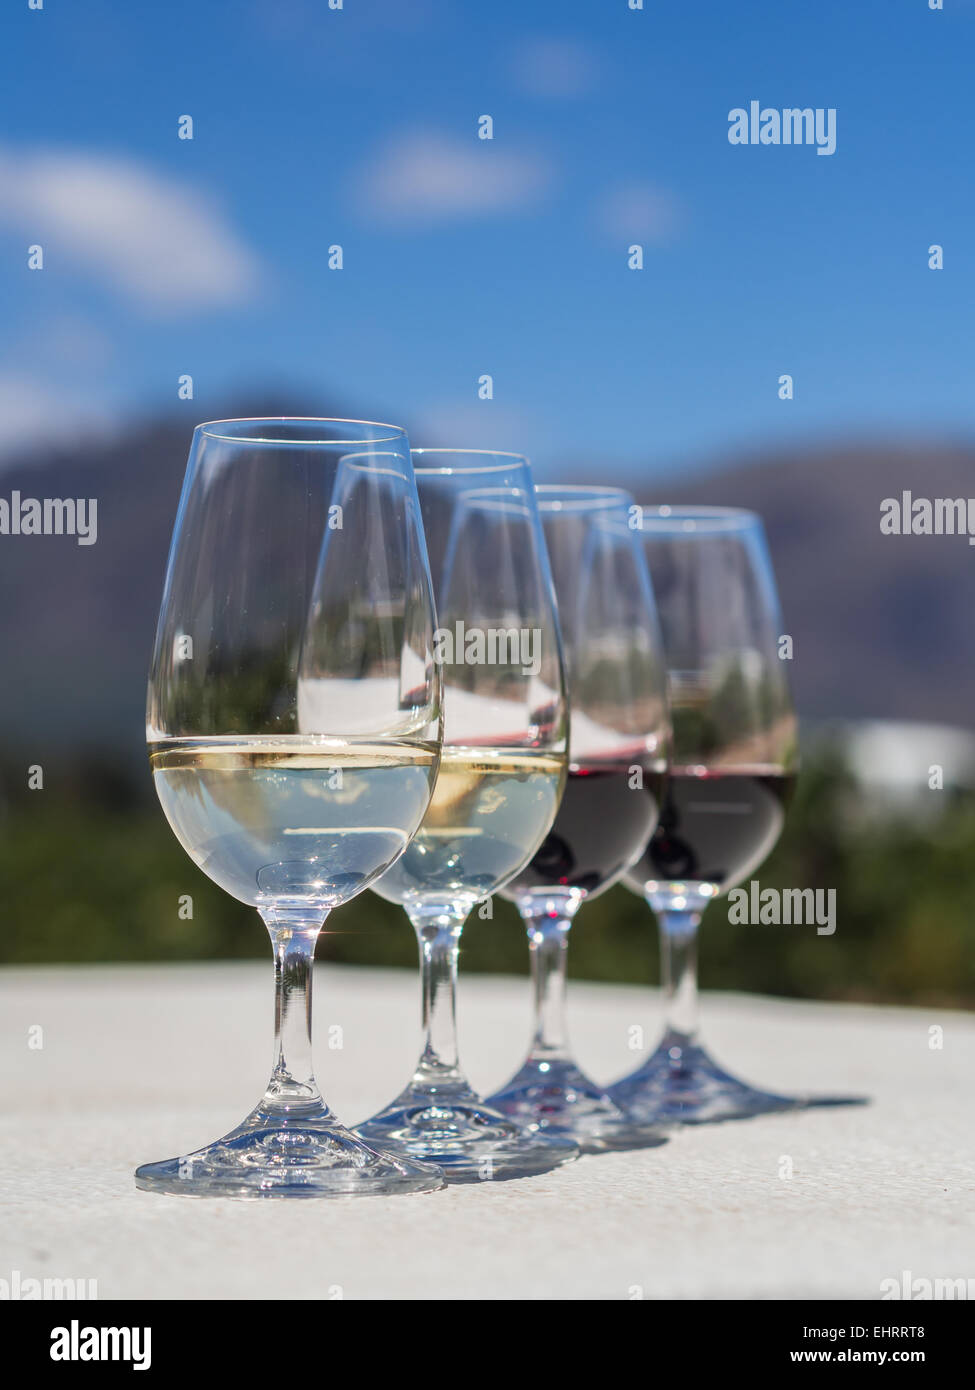 Quattro bicchieri, due con rosso e due con i vini bianchi serviti per la degustazione in una delle cantine Winelands, Sud Africa. Foto Stock